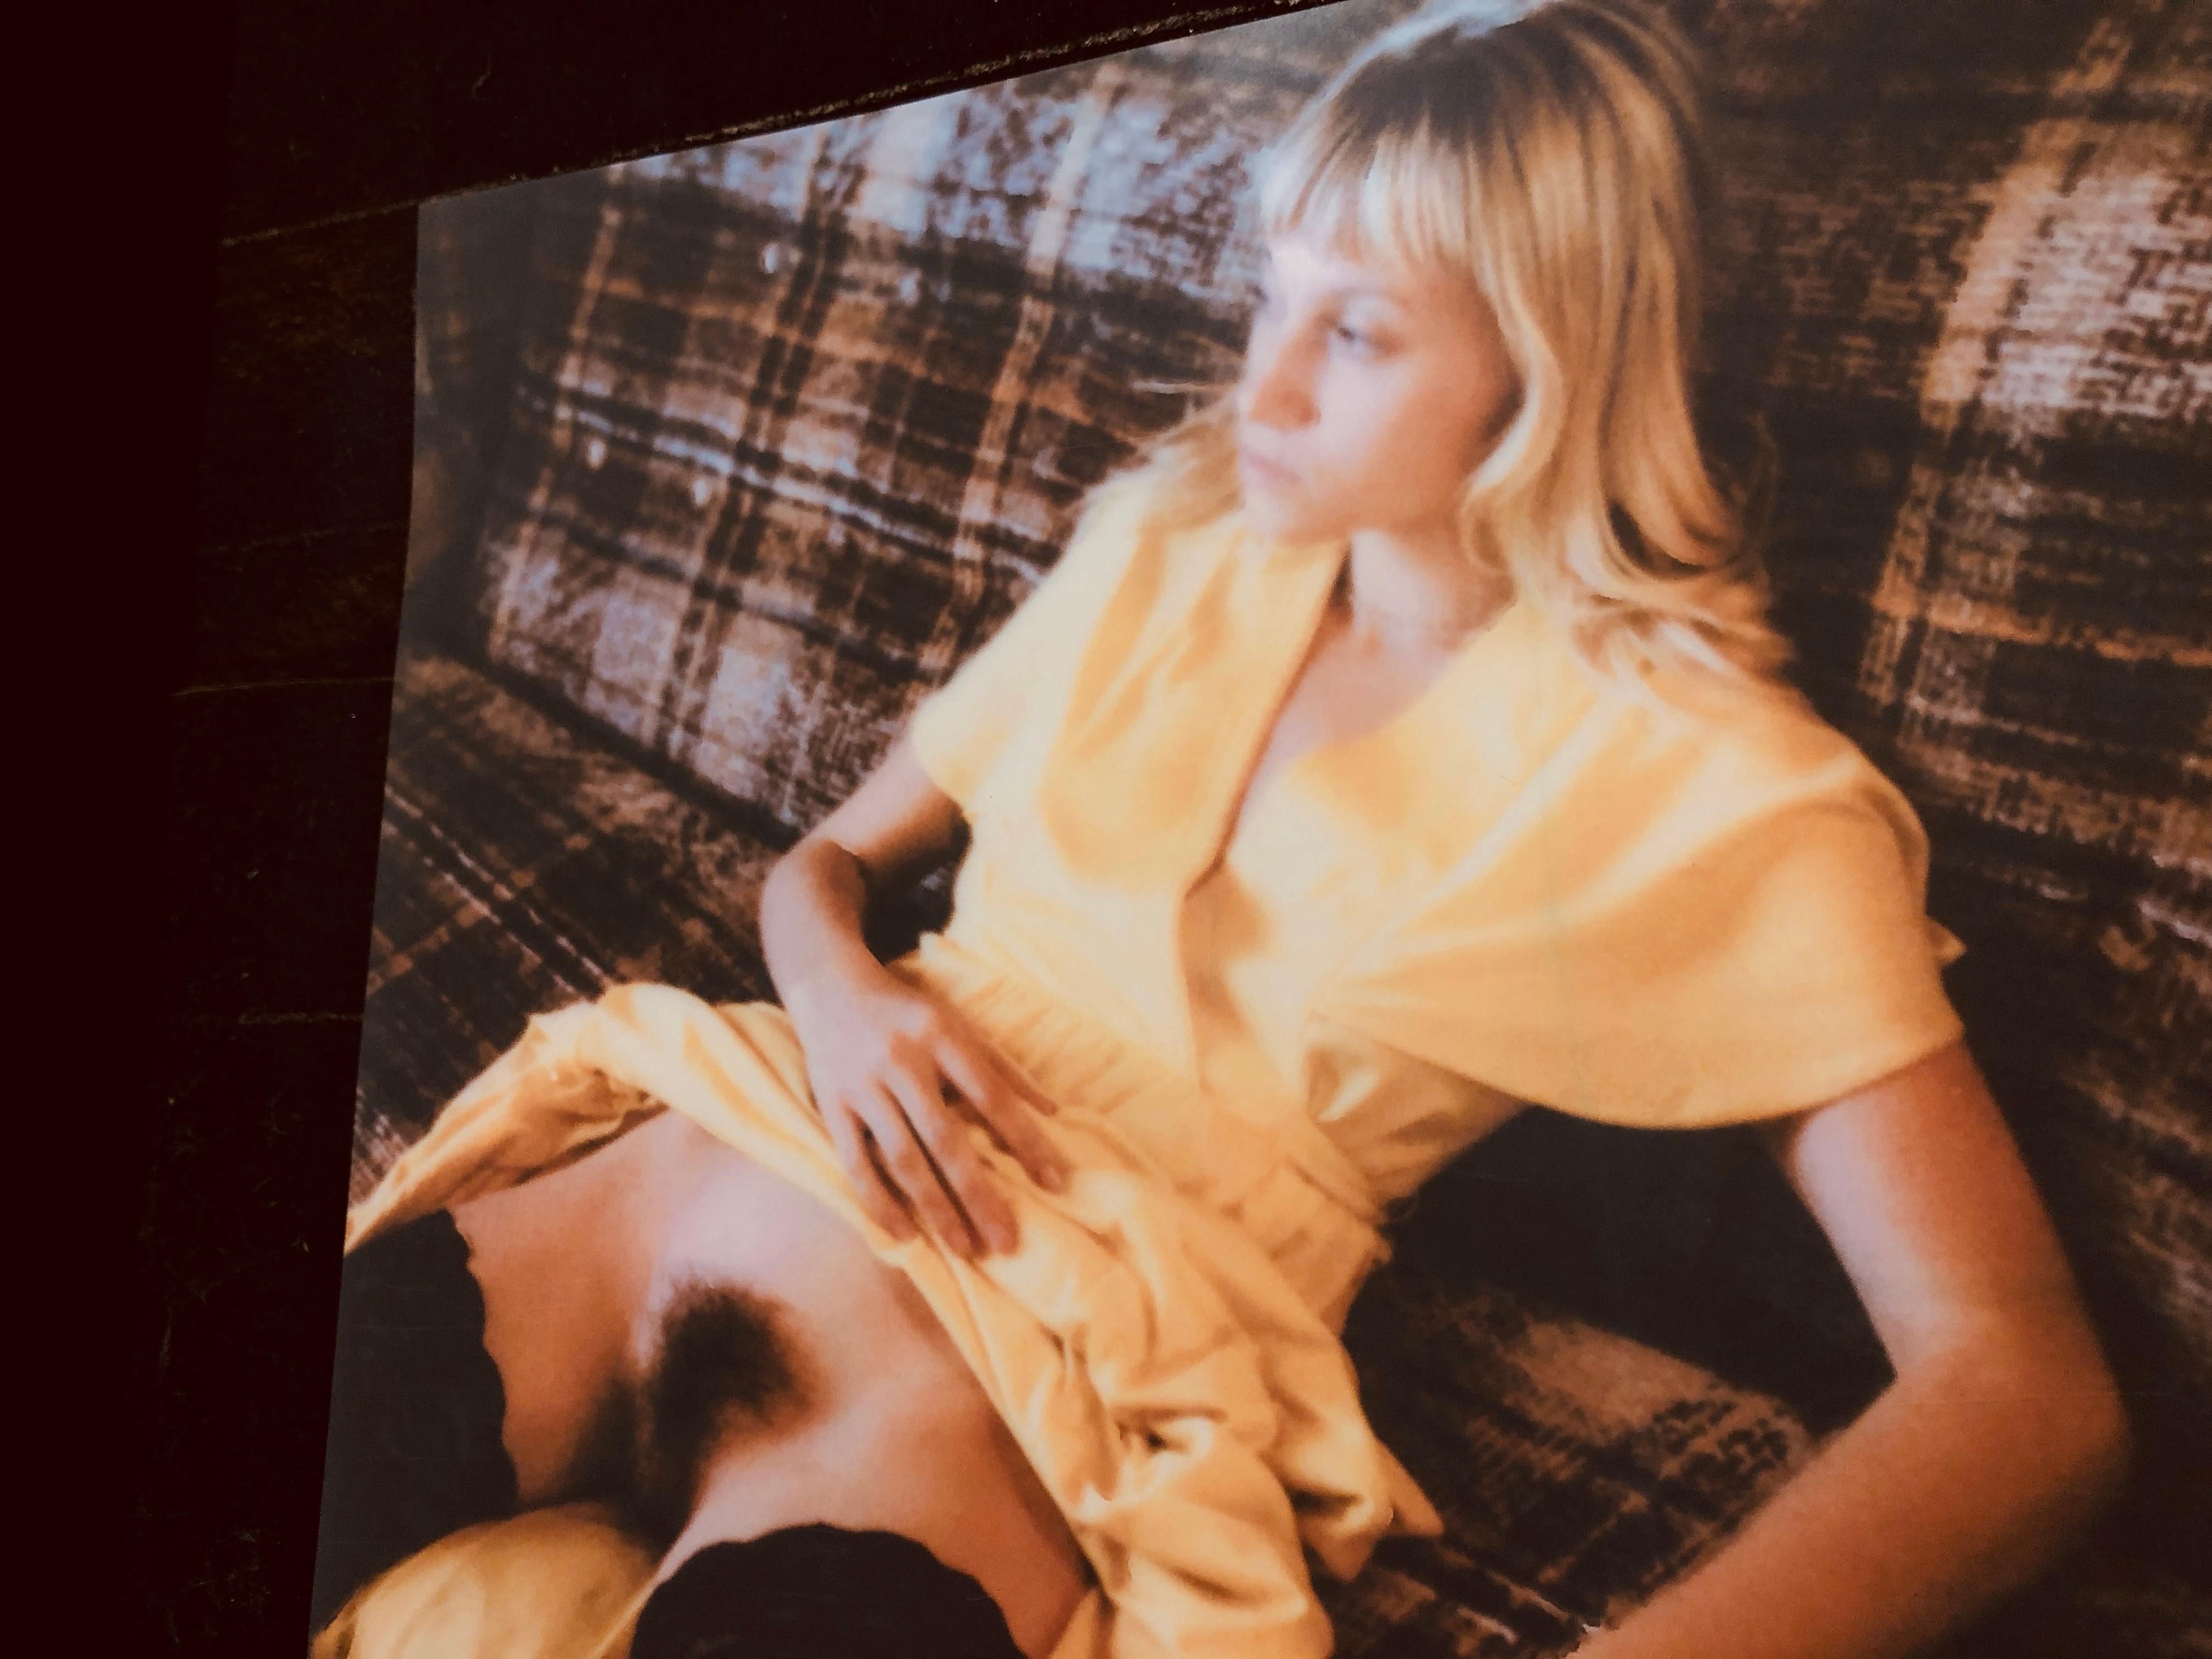 'She' Teil der Serie 'Ein Mädchen namens N.' 2019, 

50x50cm, 
Auflage 2/7 plus 2 Artist Proofs, 
Archiv-C-Print nach dem Vorbild des Polaroid, 
Nicht montiert. 
Signiert auf der Rückseite und mit Zertifikat. Künstlerinventar PL2017-198.

Dieses